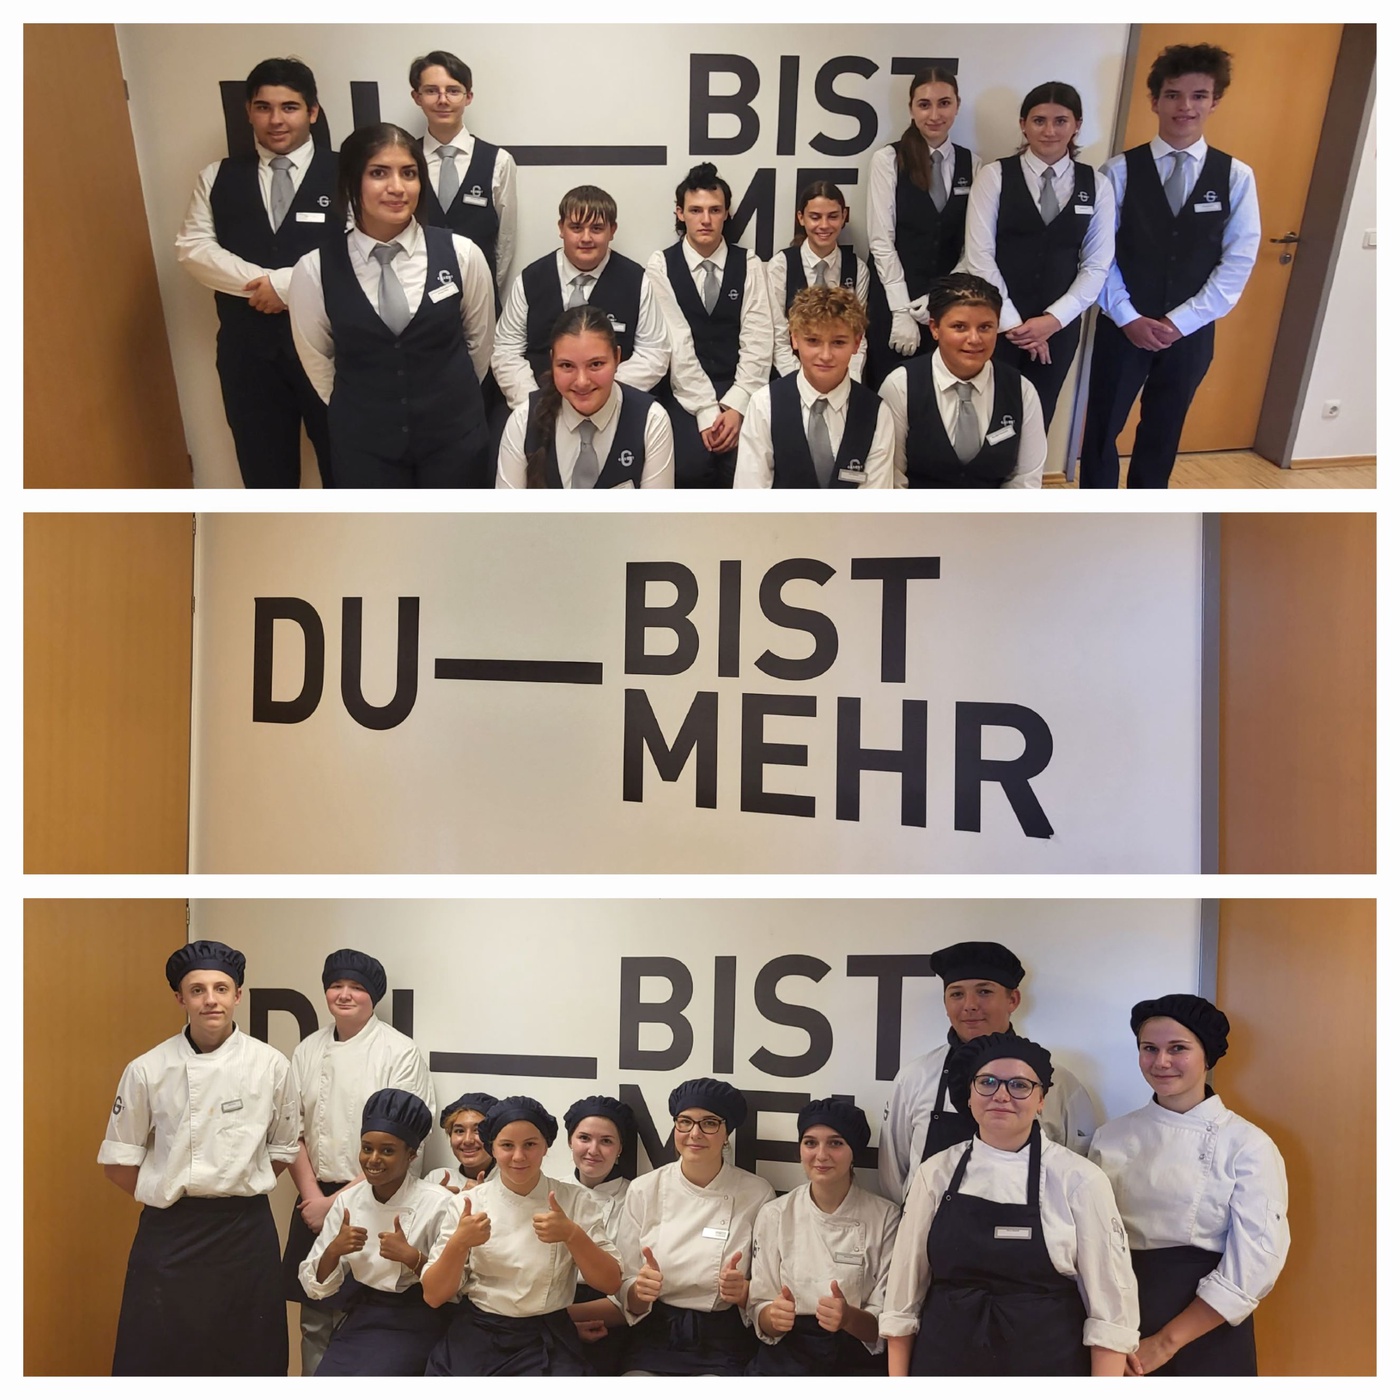 GOLDWERT trifft GASCHT _ 2/2 _ 80 Hoteliers & Gastronomen unterstützen diese Schule _ Vorarlberg